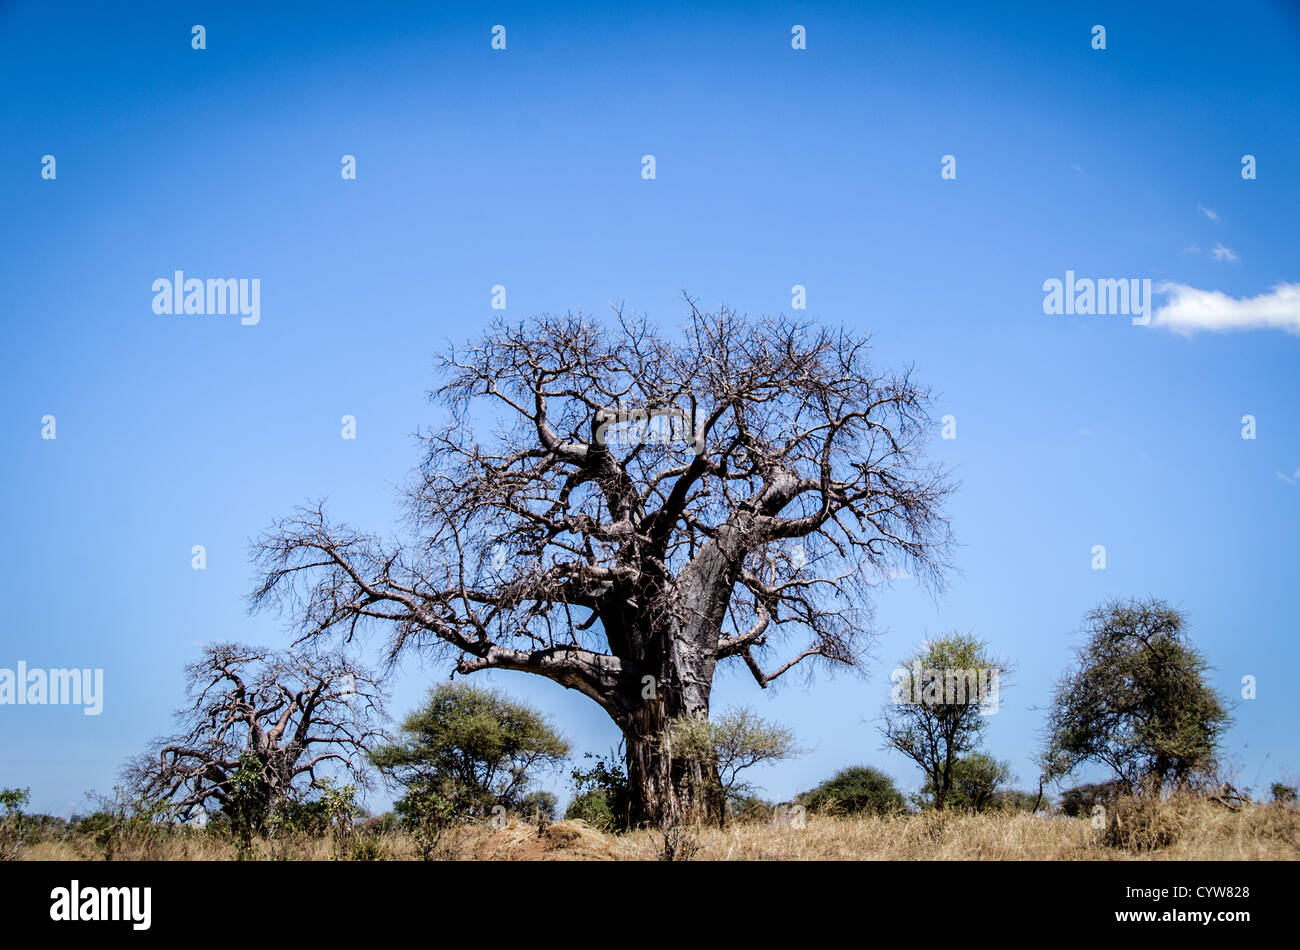 Der Tarangire National Park, Tansania - Tarangire National Park im Norden von Tansania ist berühmt für seine Tausende von Elefanten und Baobab-bäume. In diesem Schoß, die kahle Baobab Baum in der trockenen Jahreszeit steht heraus gegen den klaren blauen Himmel. Stockfoto